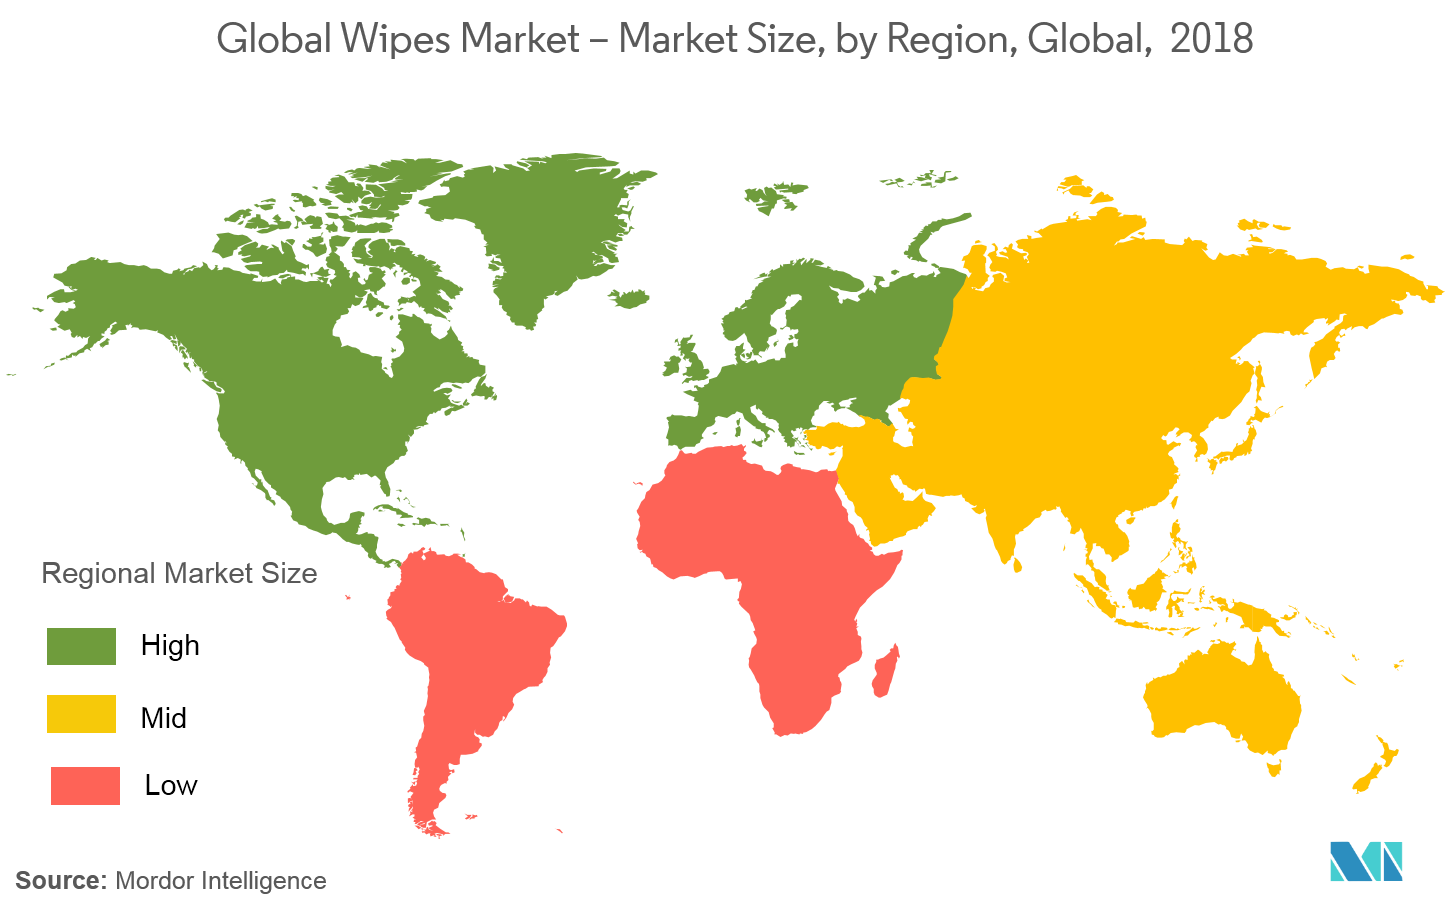 سوق المناديل العالمية - حجم السوق، حسب المنطقة، عالميا، 2018